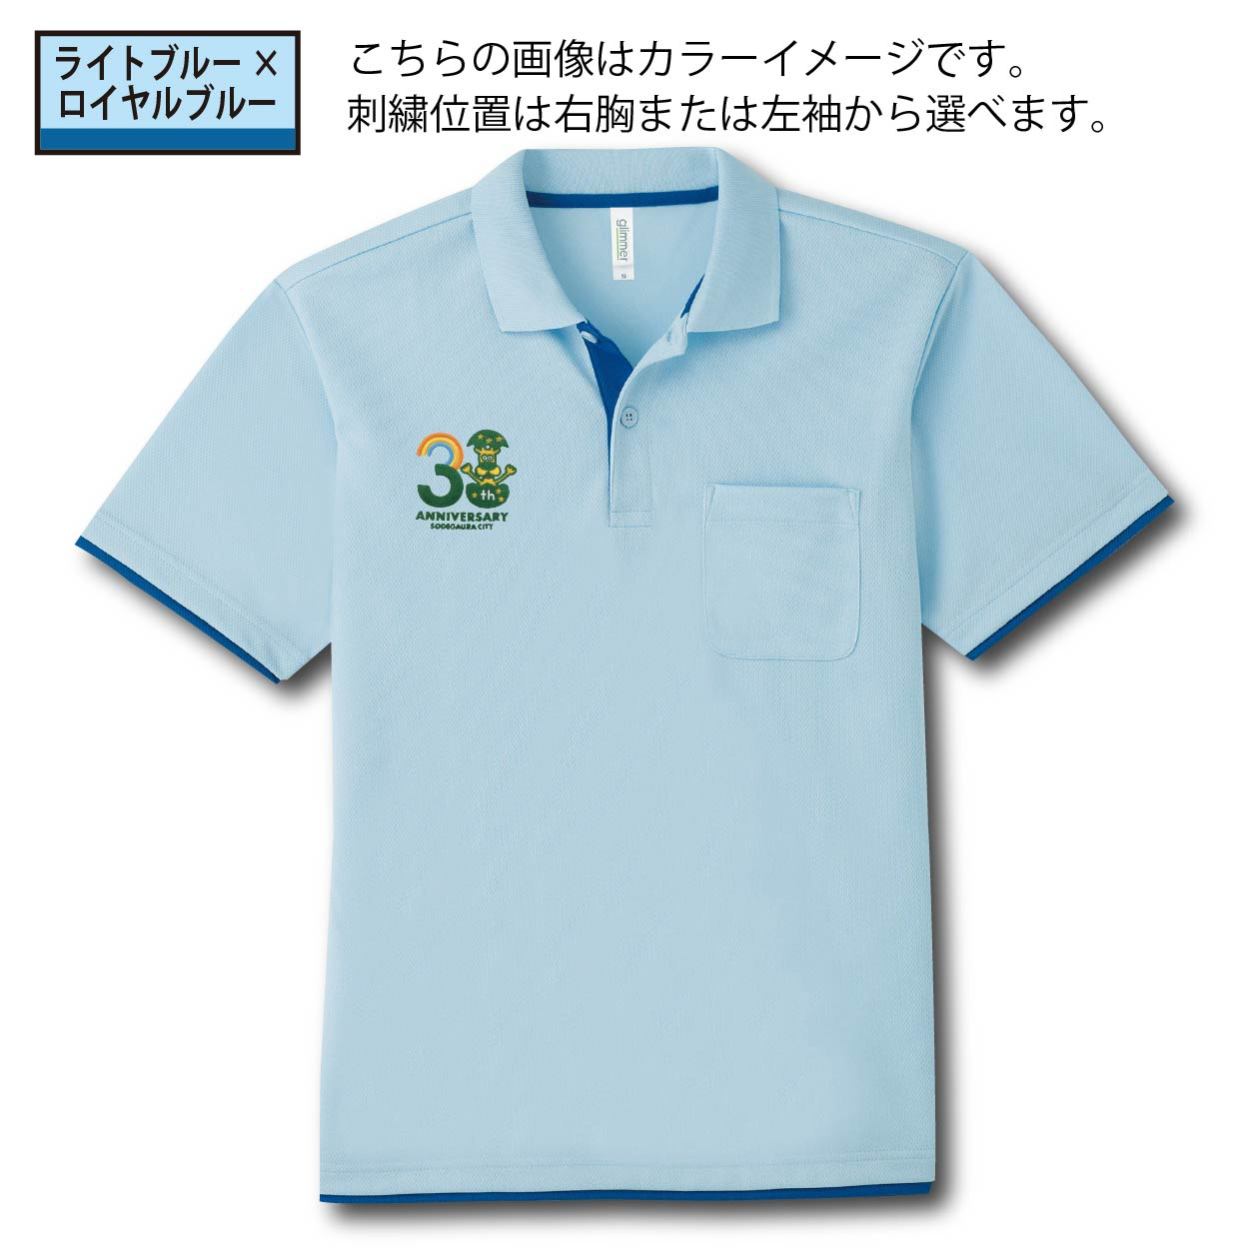 ガウラ 袖ケ浦市制30周年記念ロゴ ドライレイヤードポロシャツ 3L〜5L 